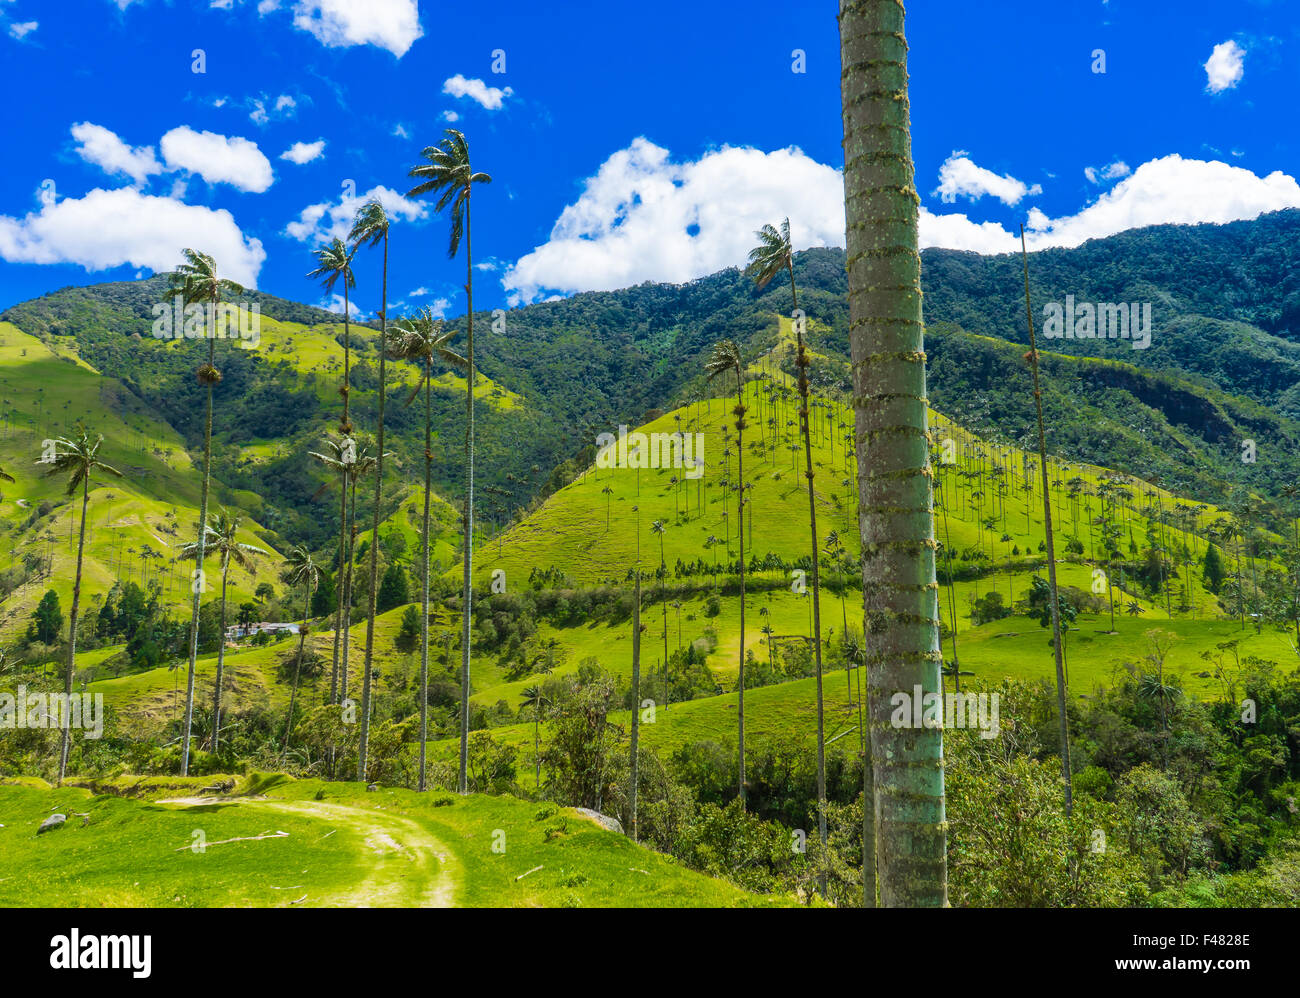 A walk through the Valle de Cocora. June, 2015. Quindio, Colombia. Stock Photo